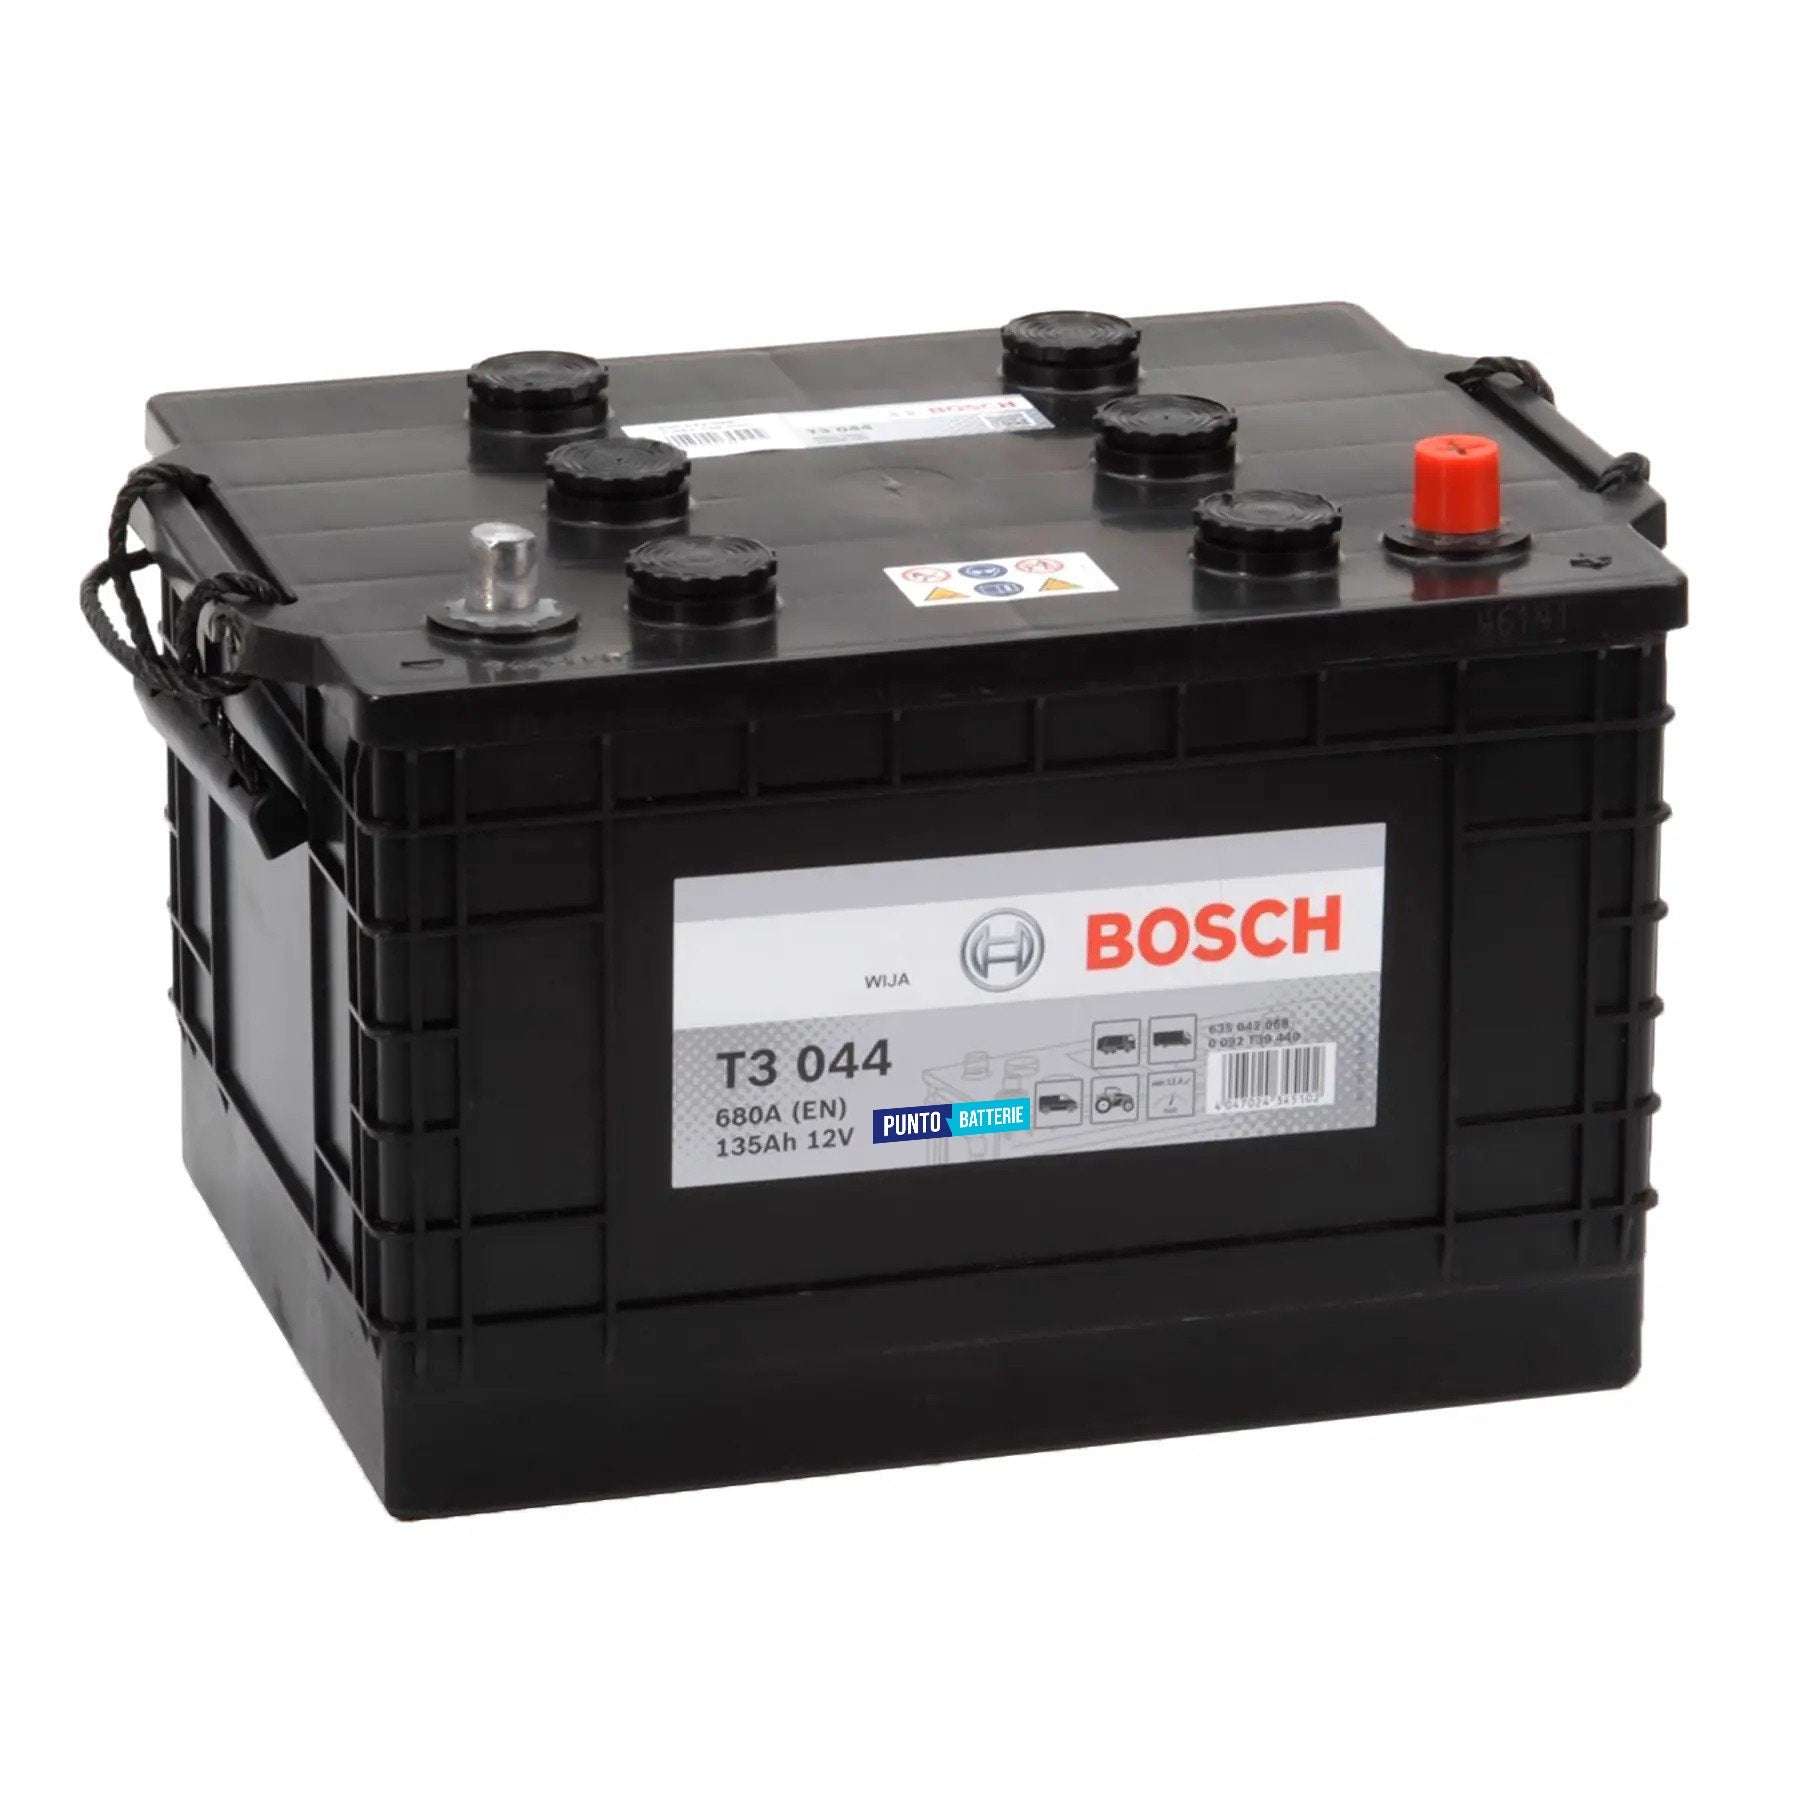 Batteria originale Bosch T3 T3044, dimensioni 360 x 253 x 240, polo positivo a destra, 12 volt, 135 amperora, 680 ampere. Batteria per camion e veicoli pesanti.